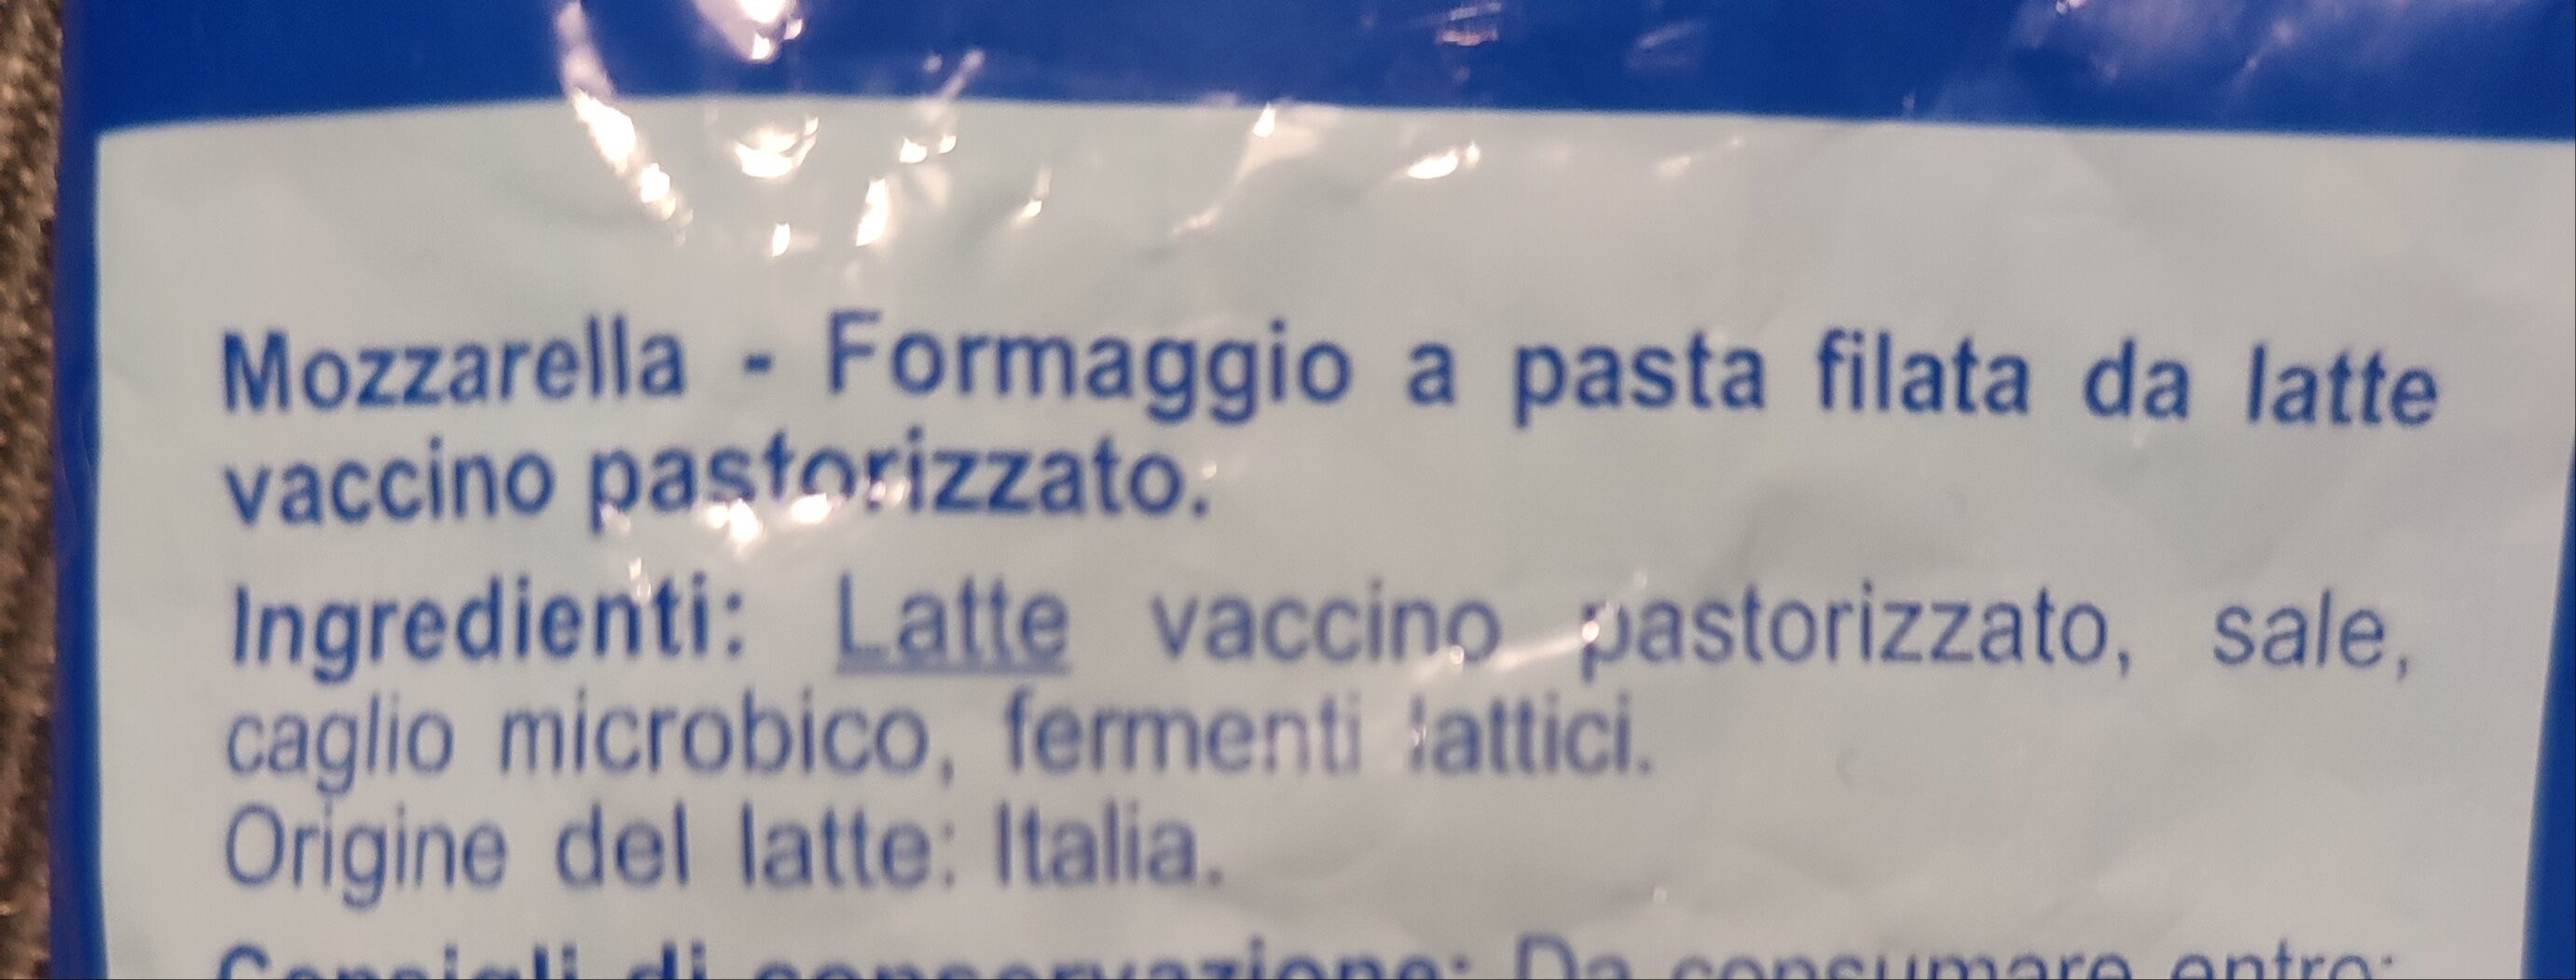 Mozzarella - Ingredienti